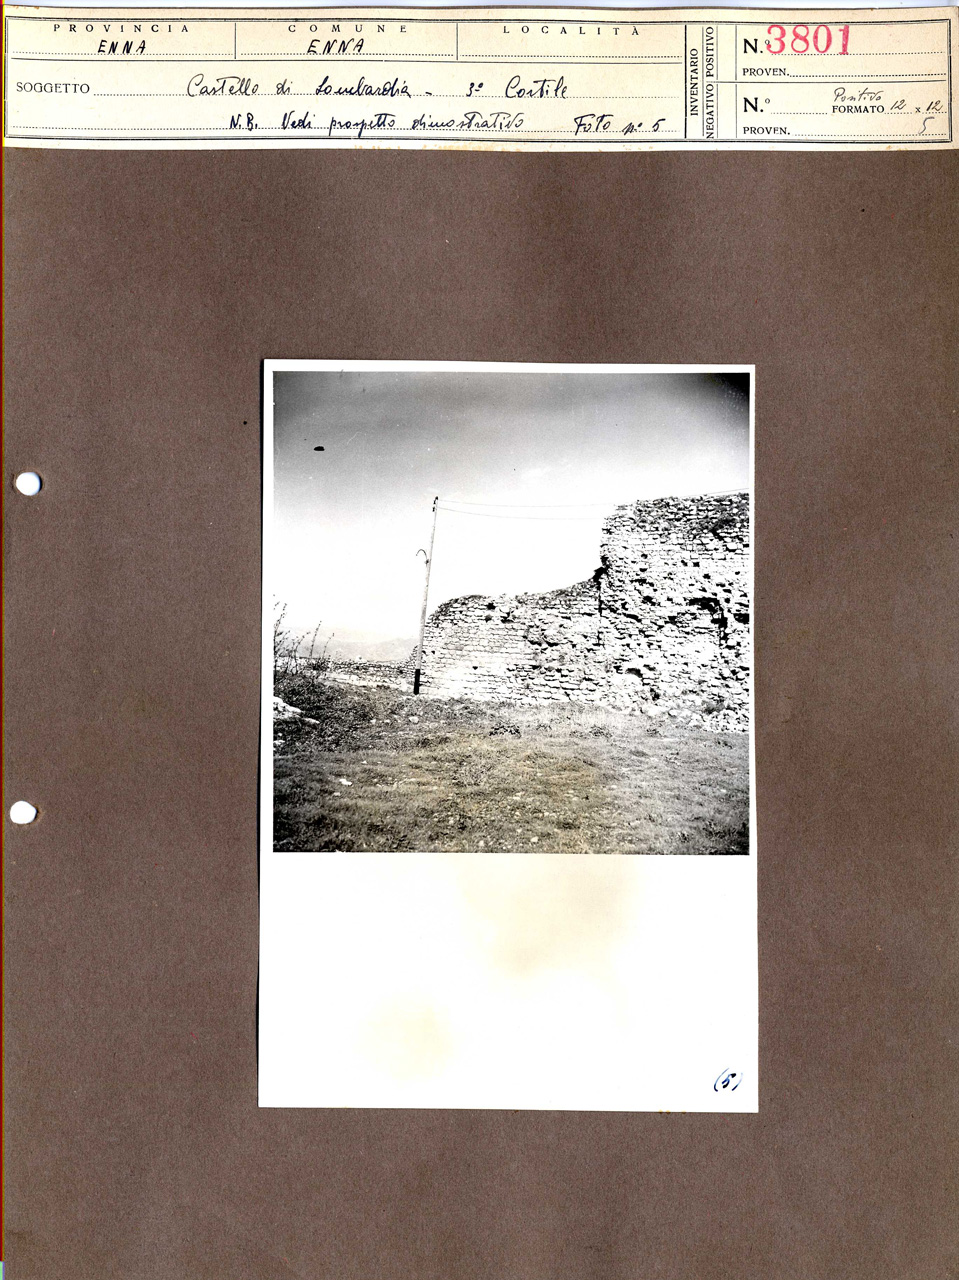 Architettura militare - fortificazioni (positivo, elemento-parte componente, scheda di supporto) di Anonimo <1945 - 1955> (attribuito), Ente Provinciale per il Turismo - Enna (metà XX)